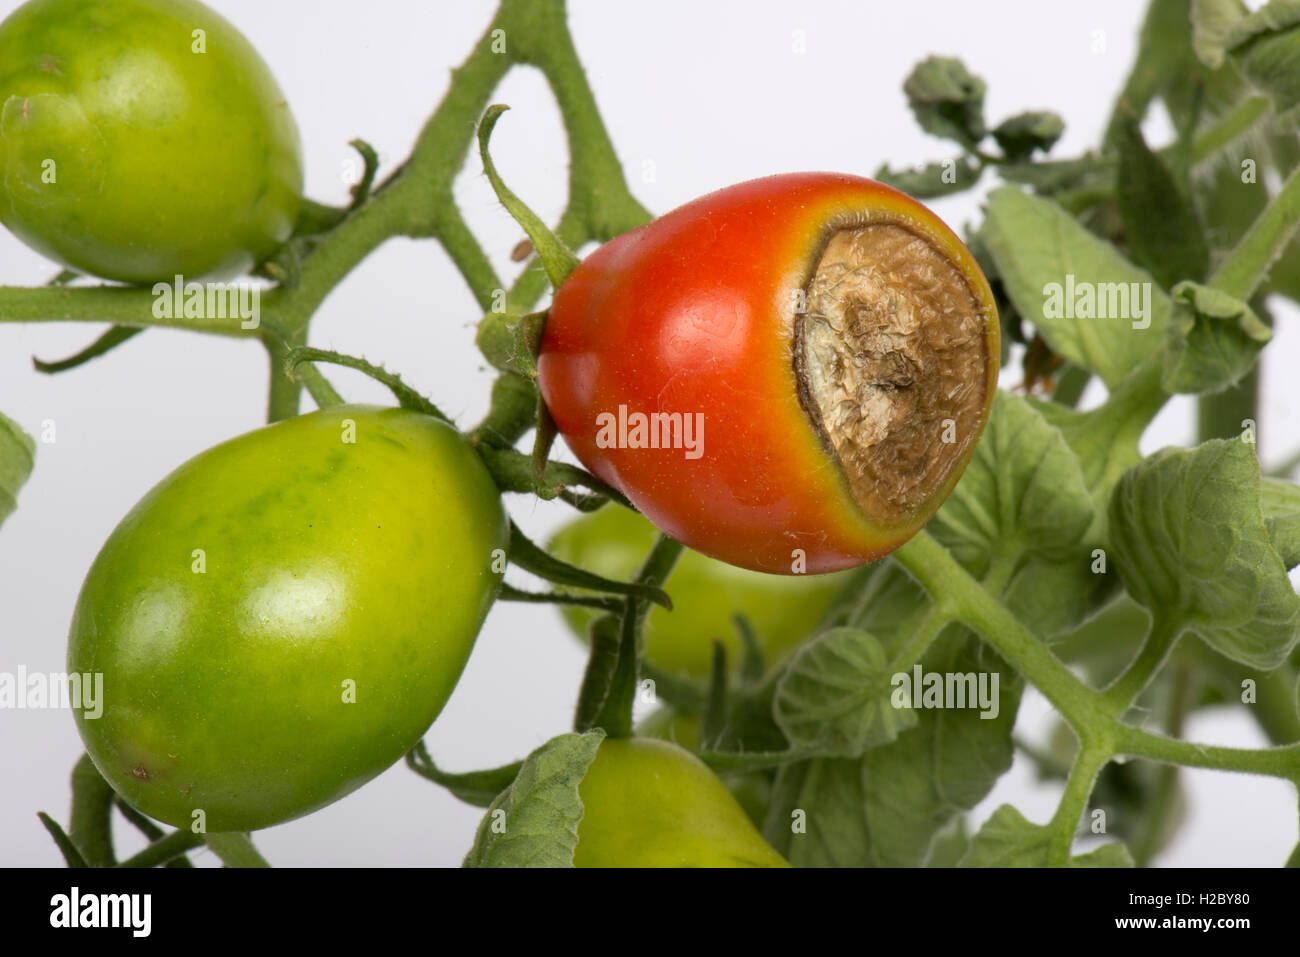 Blossom end rot, síntomas de deficiencia de calcio en un fruto de tomate cultivadas en el invernadero Foto de stock